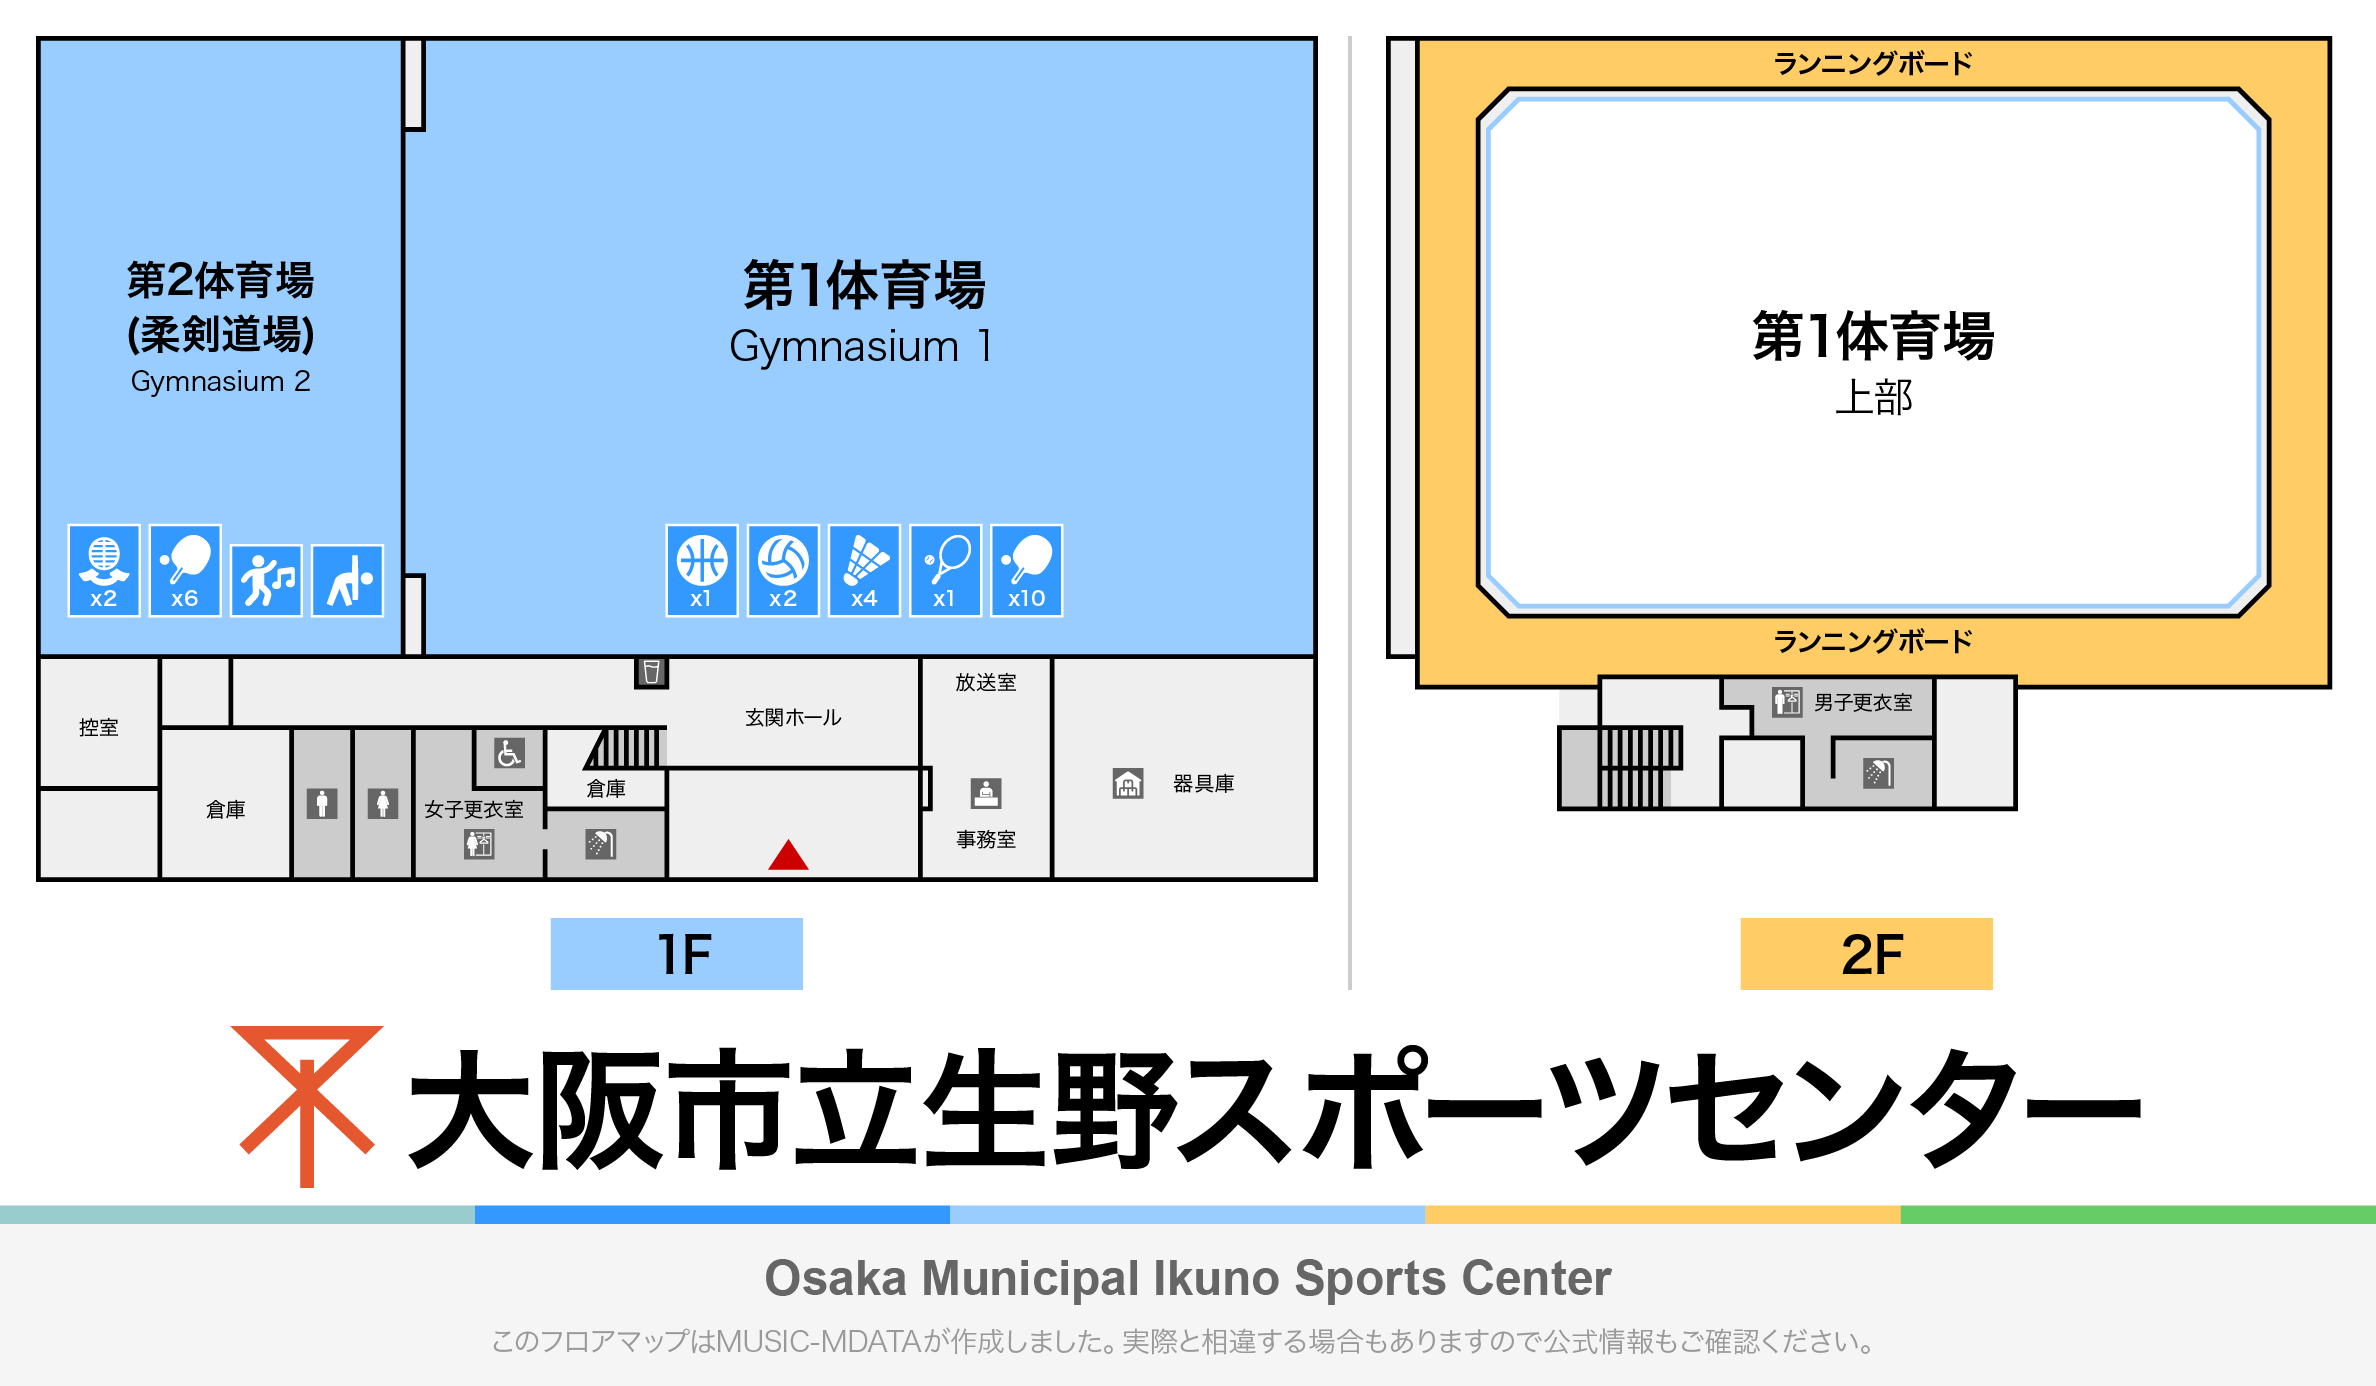 大阪市立生野スポーツセンターのフロアマップ・体育館